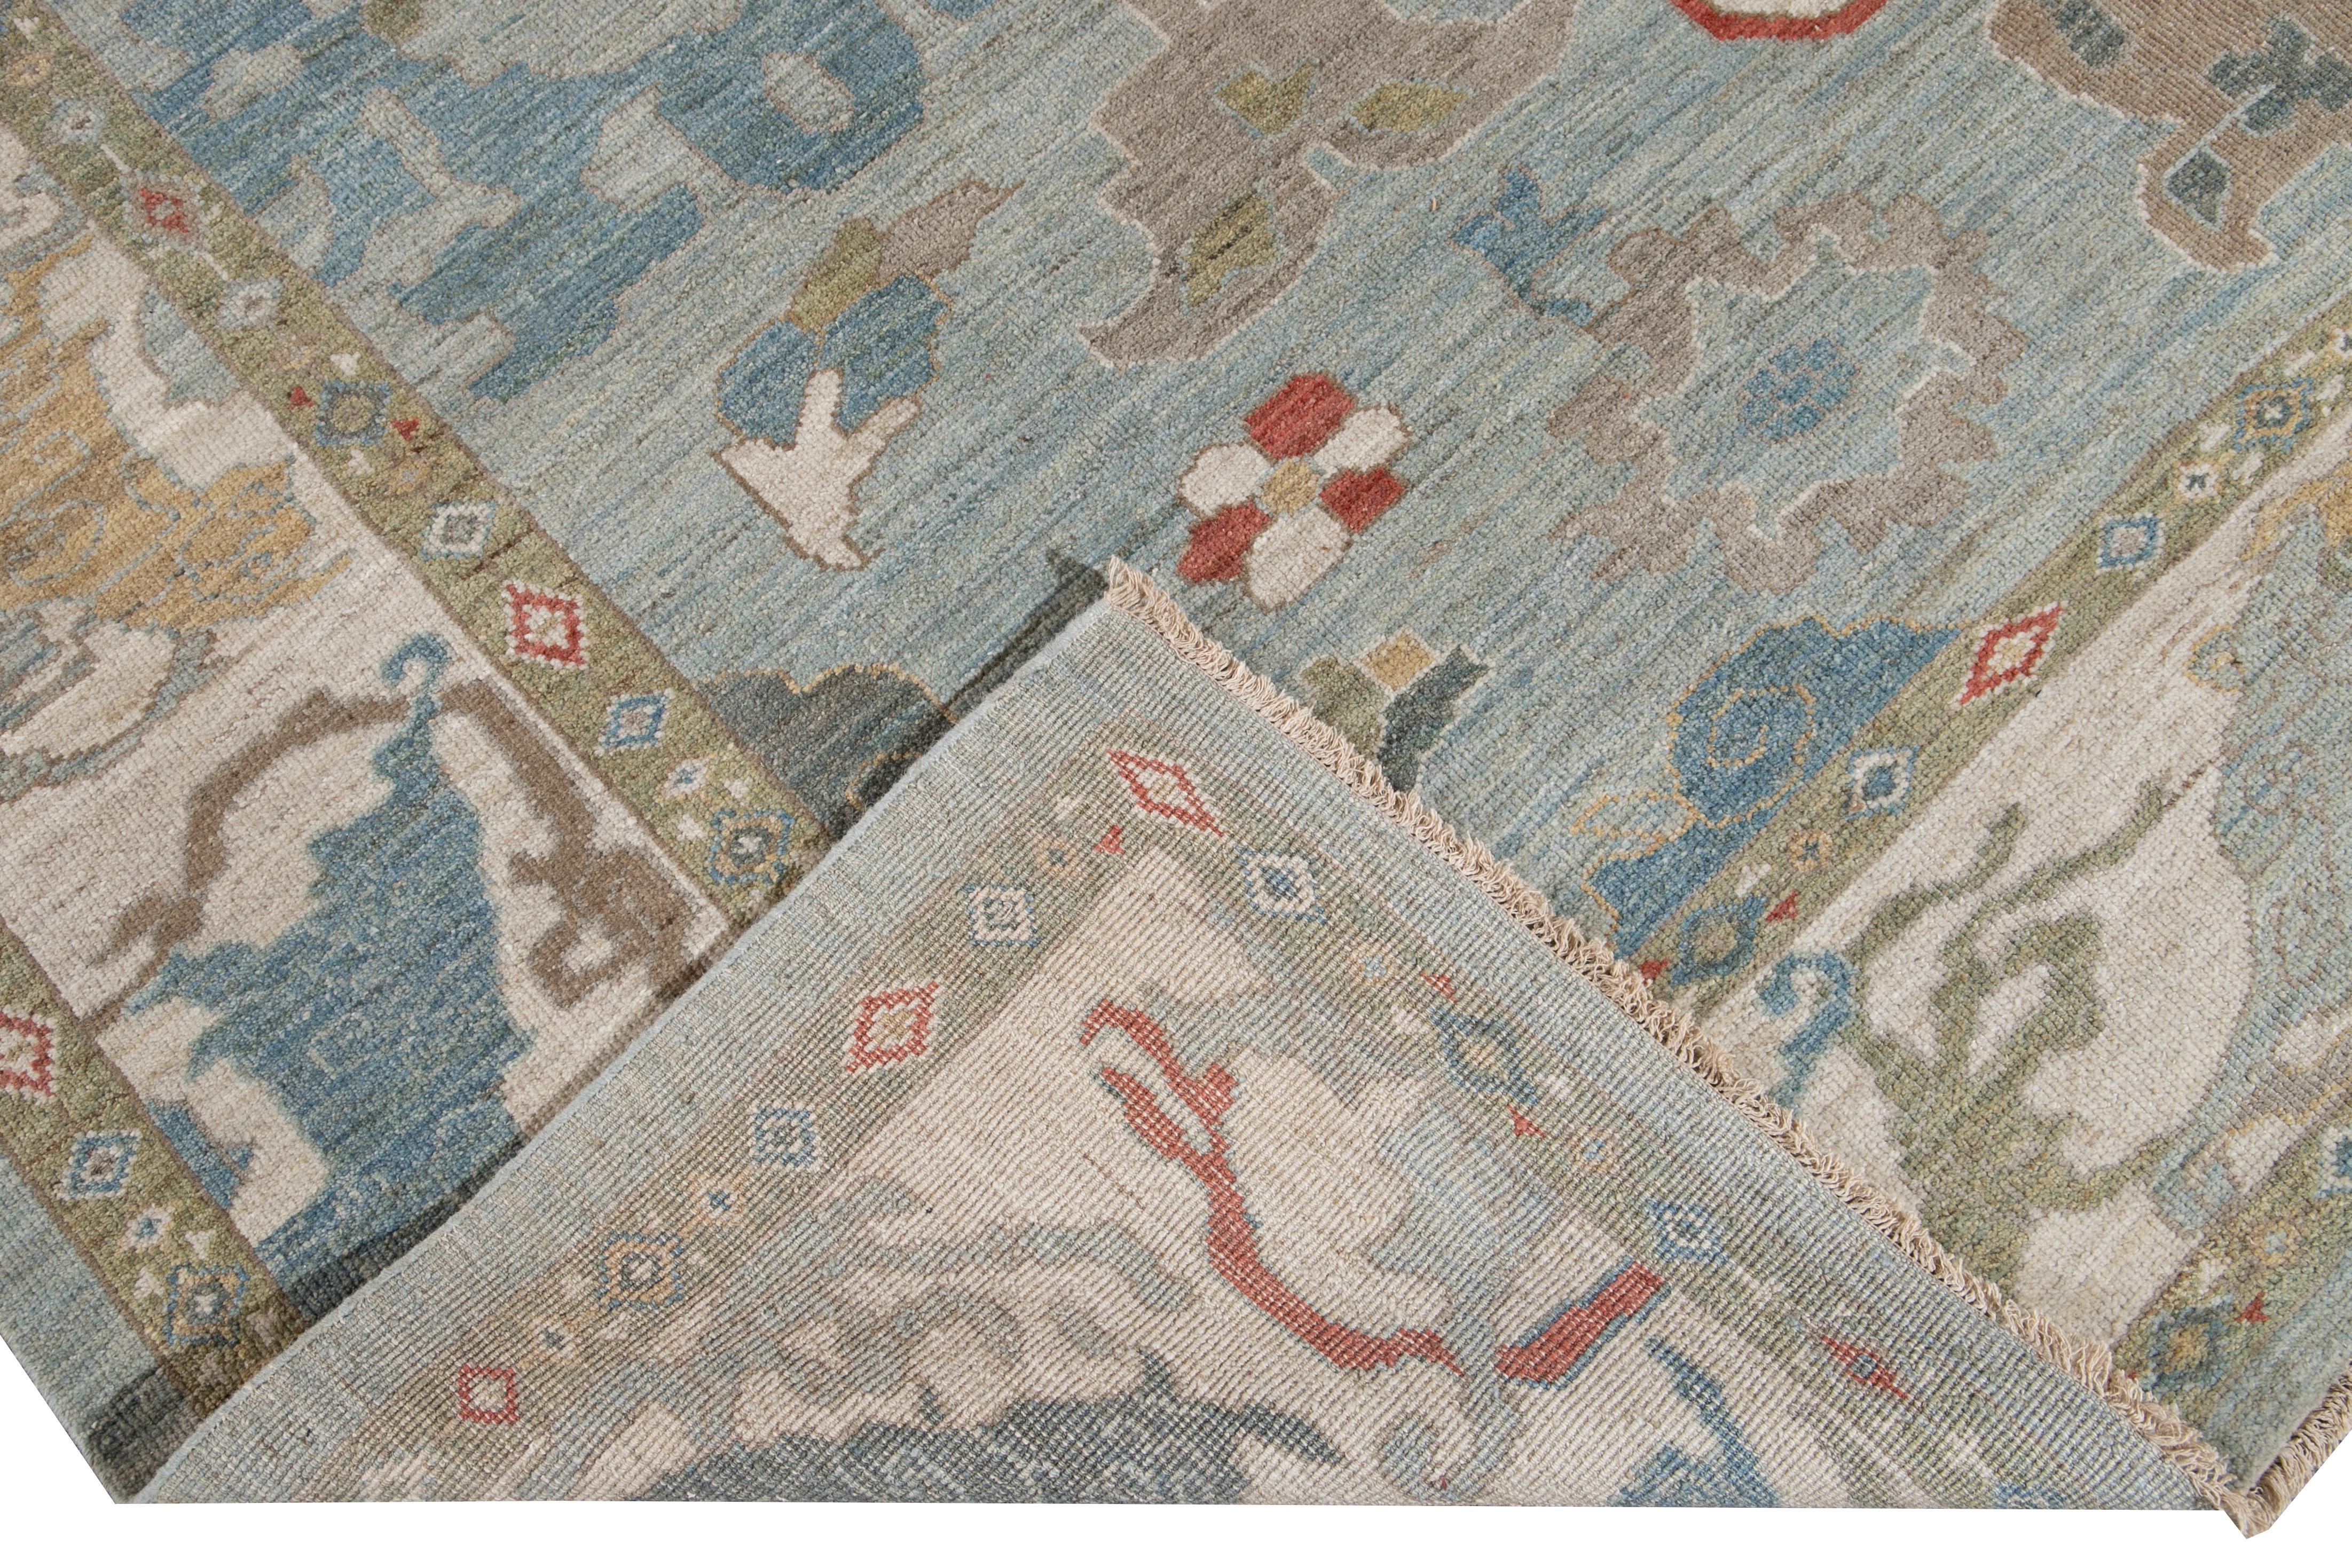 Schöner zeitgenössischer Sultanabad handgeknüpfter Wollteppich mit blauem Feld. Dieser Sultanabad-Teppich hat einen mehrfarbigen Akzent in einem klassischen floralen Medaillon-Design.

Dieser Teppich misst: 10' x 13'7